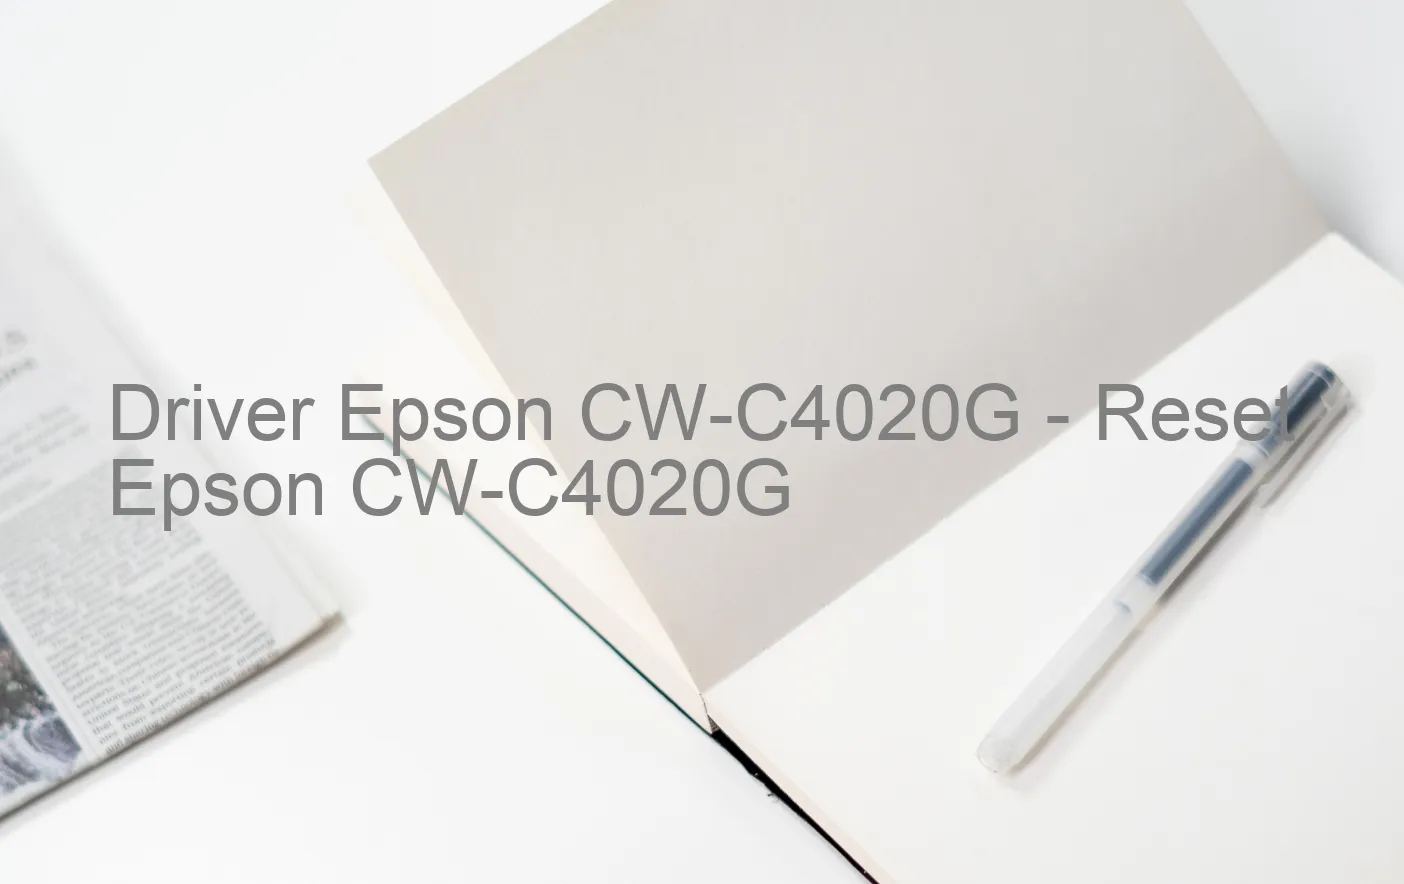 Epson CW-C4020Gのドライバー、Epson CW-C4020Gのリセットソフトウェア